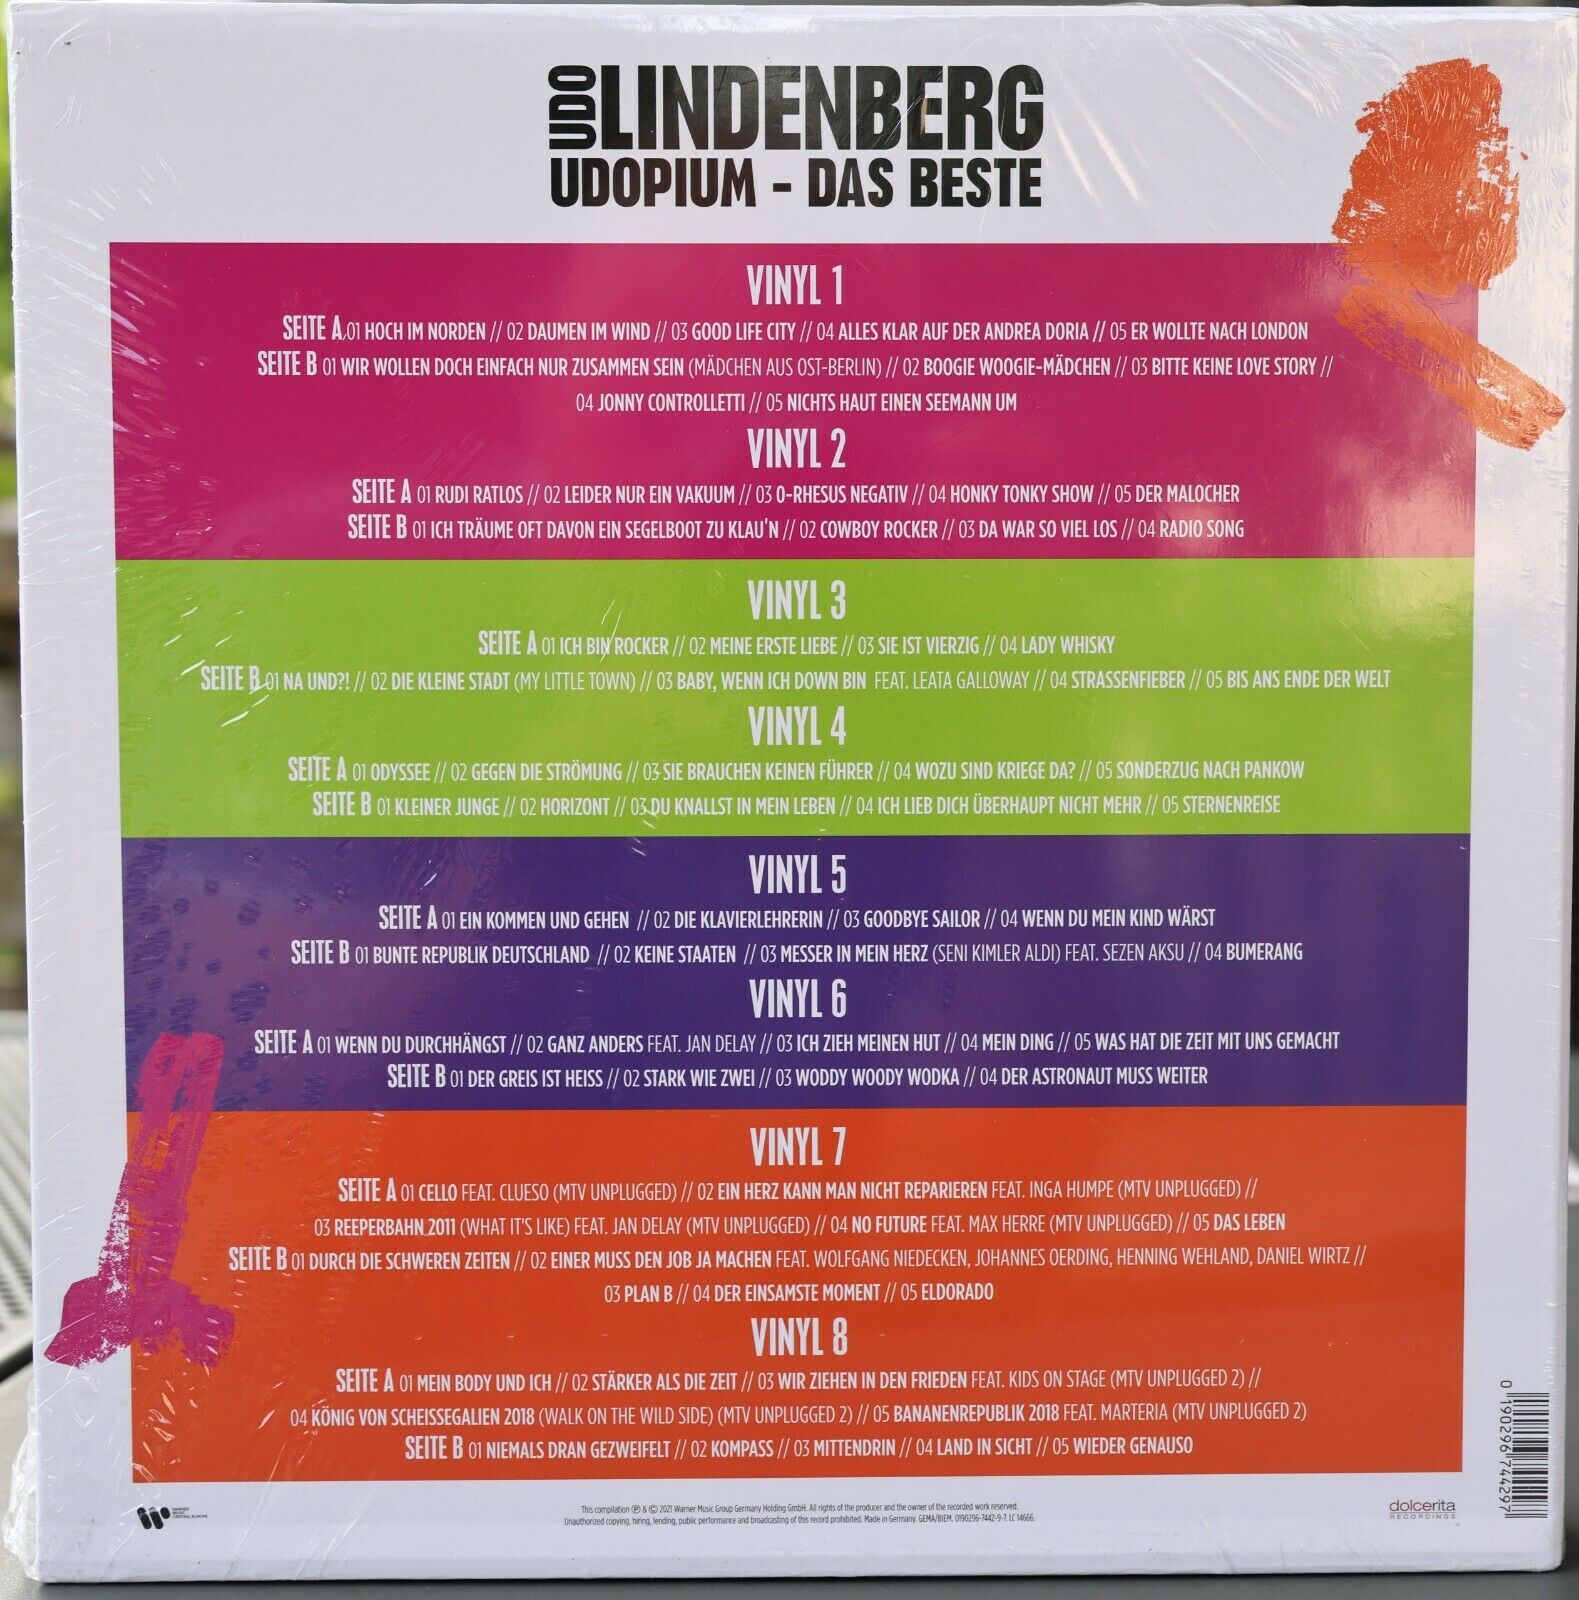 popsike.com - Udo Lindenberg UDOPIUM Das Beste Limitierte VINYL-Box 8 LP  Colored Vinyl - auction details